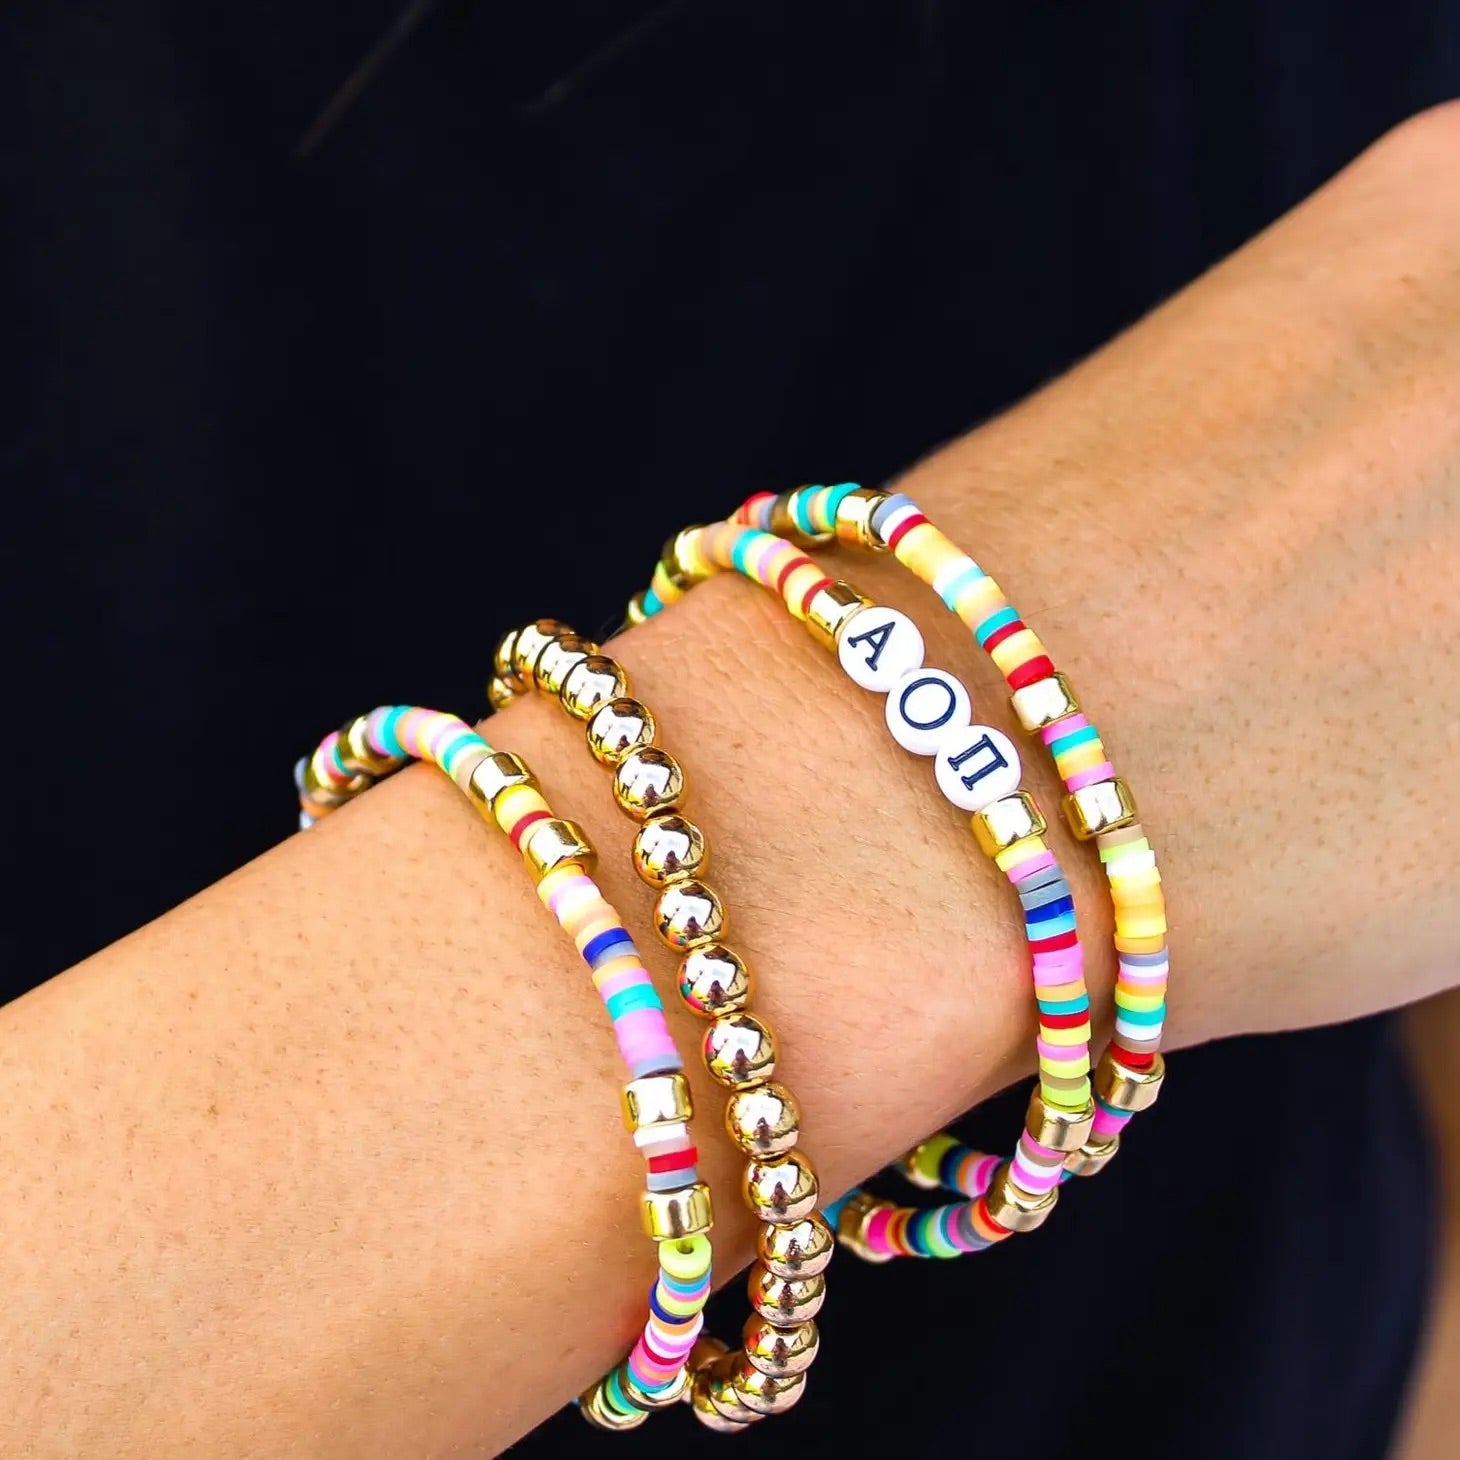 Colorful Love Heart Letter Bracelets Girls Sweet Y2k Aesthetic Hand Jewelry  | eBay